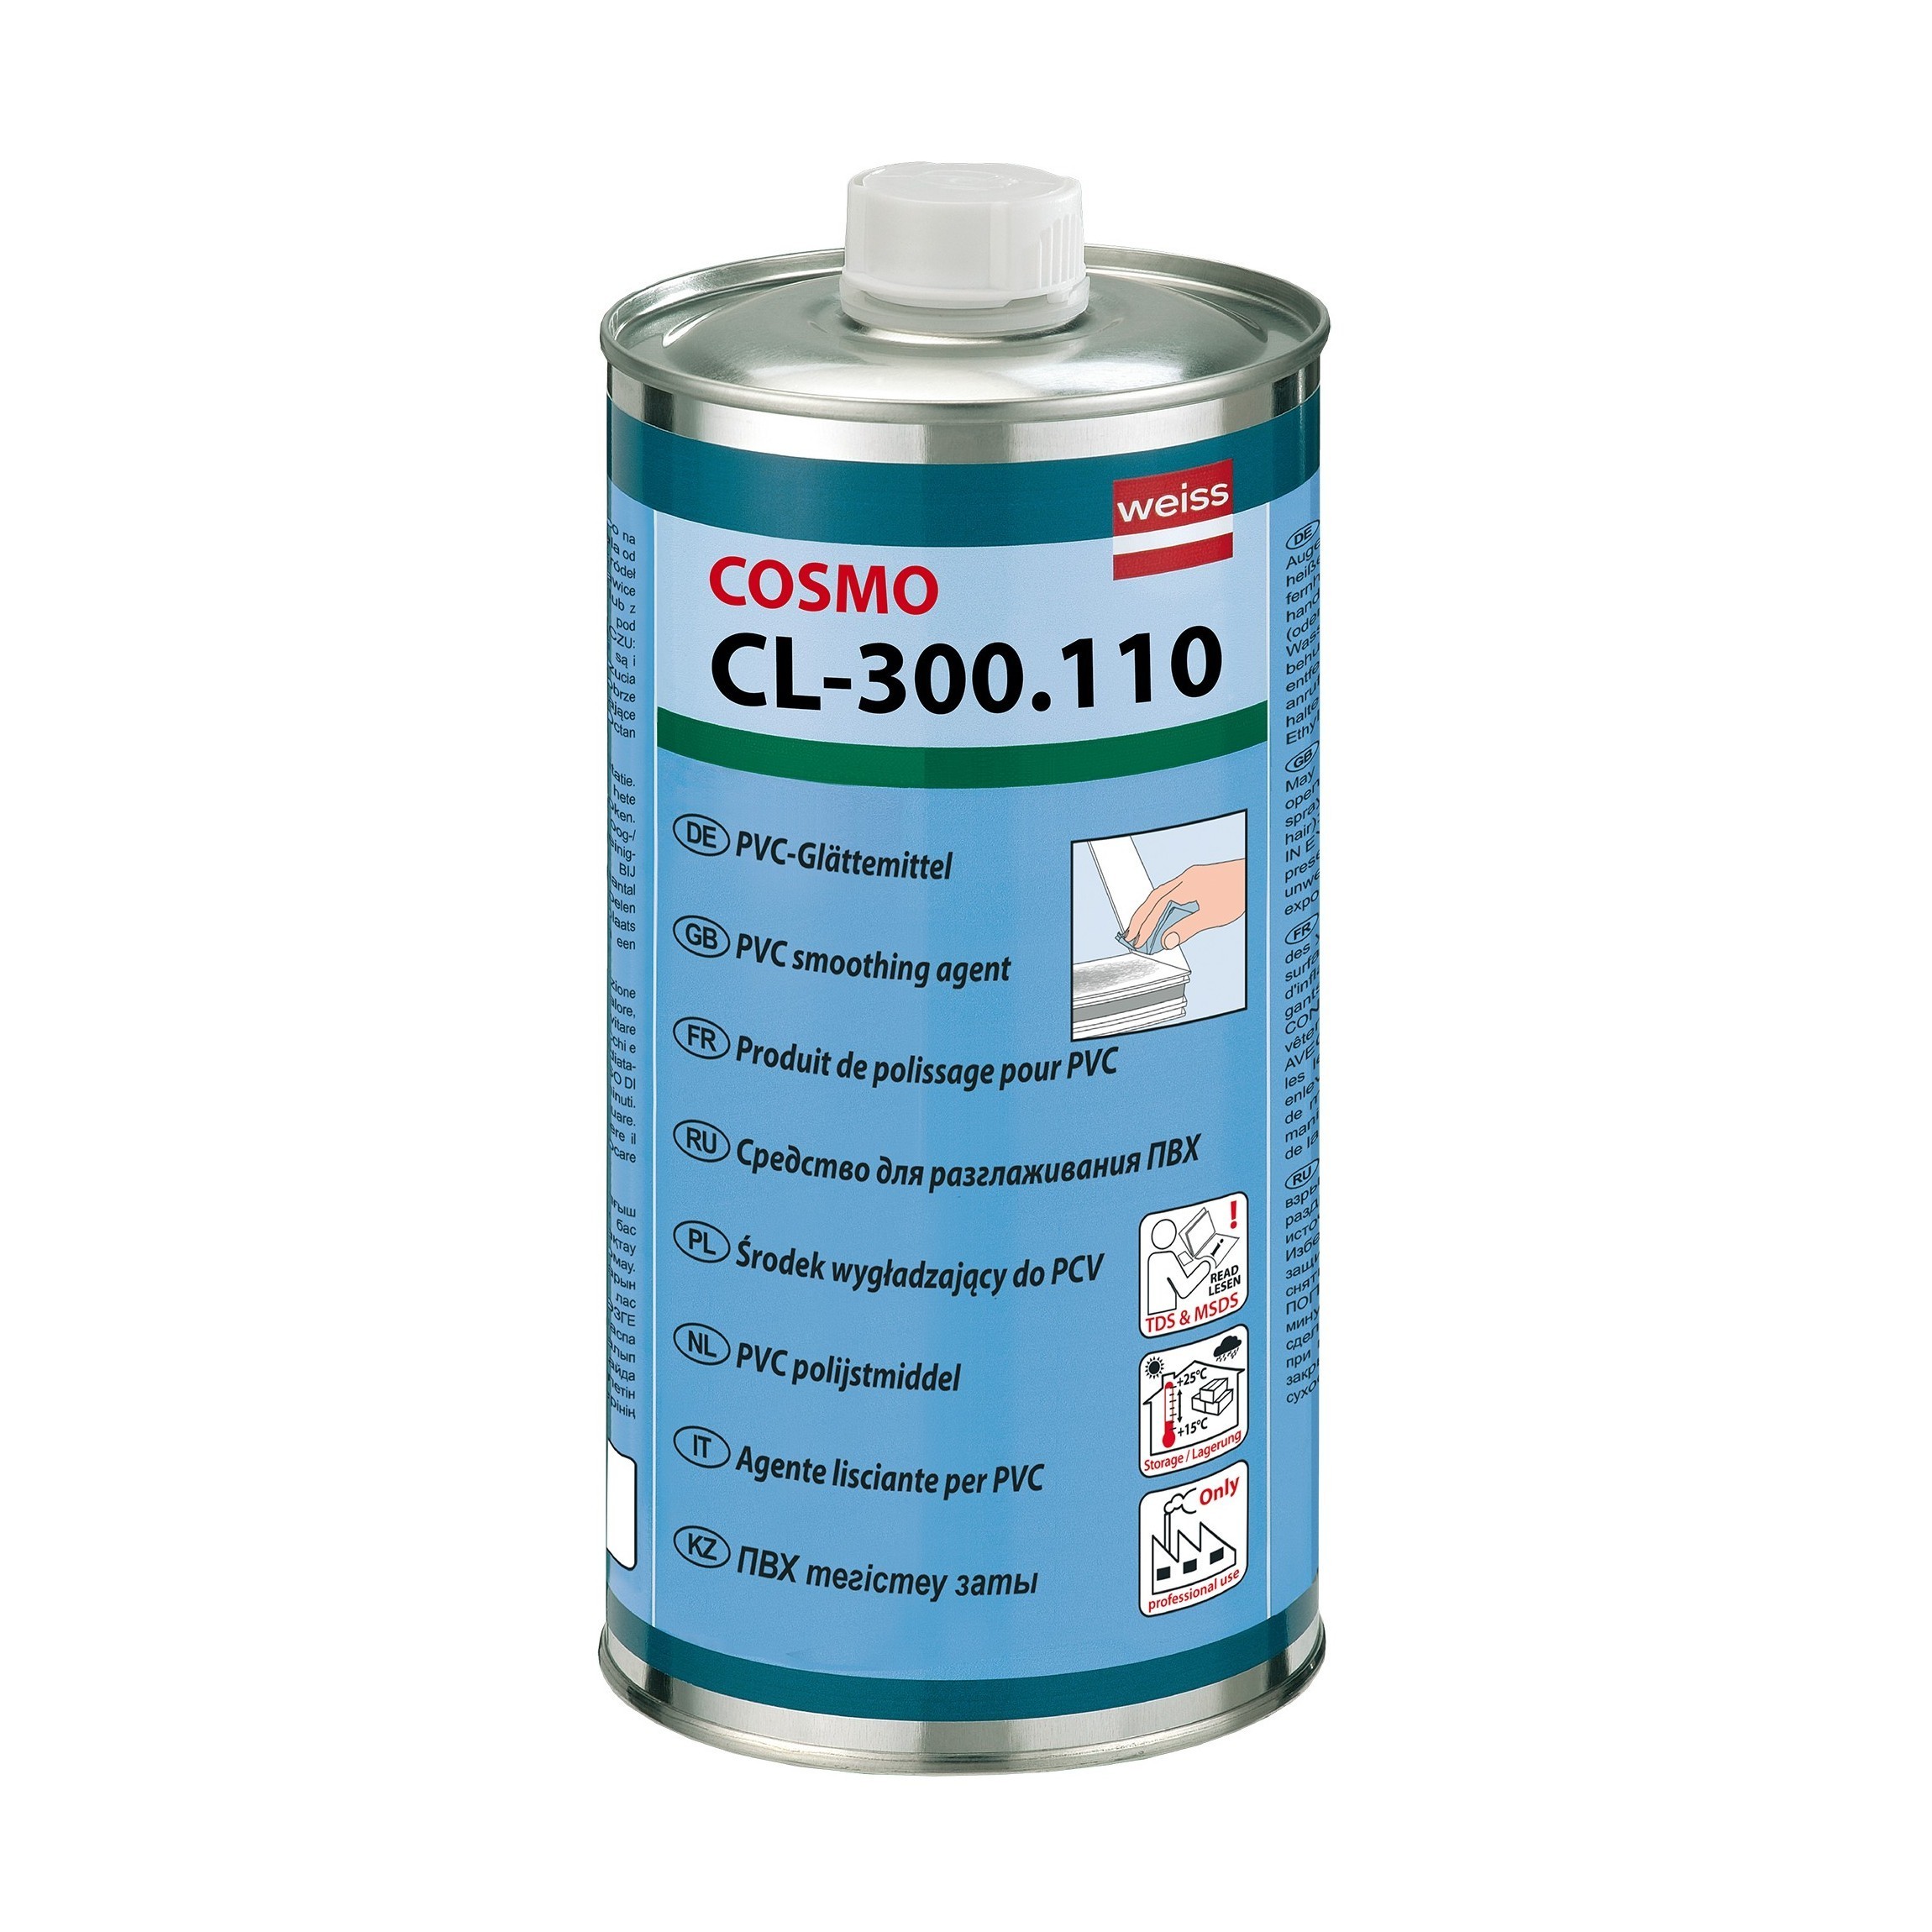 Очиститель сильнорастворяющий Cosmofen 5 CL-300.110 (1000 мл) - фото